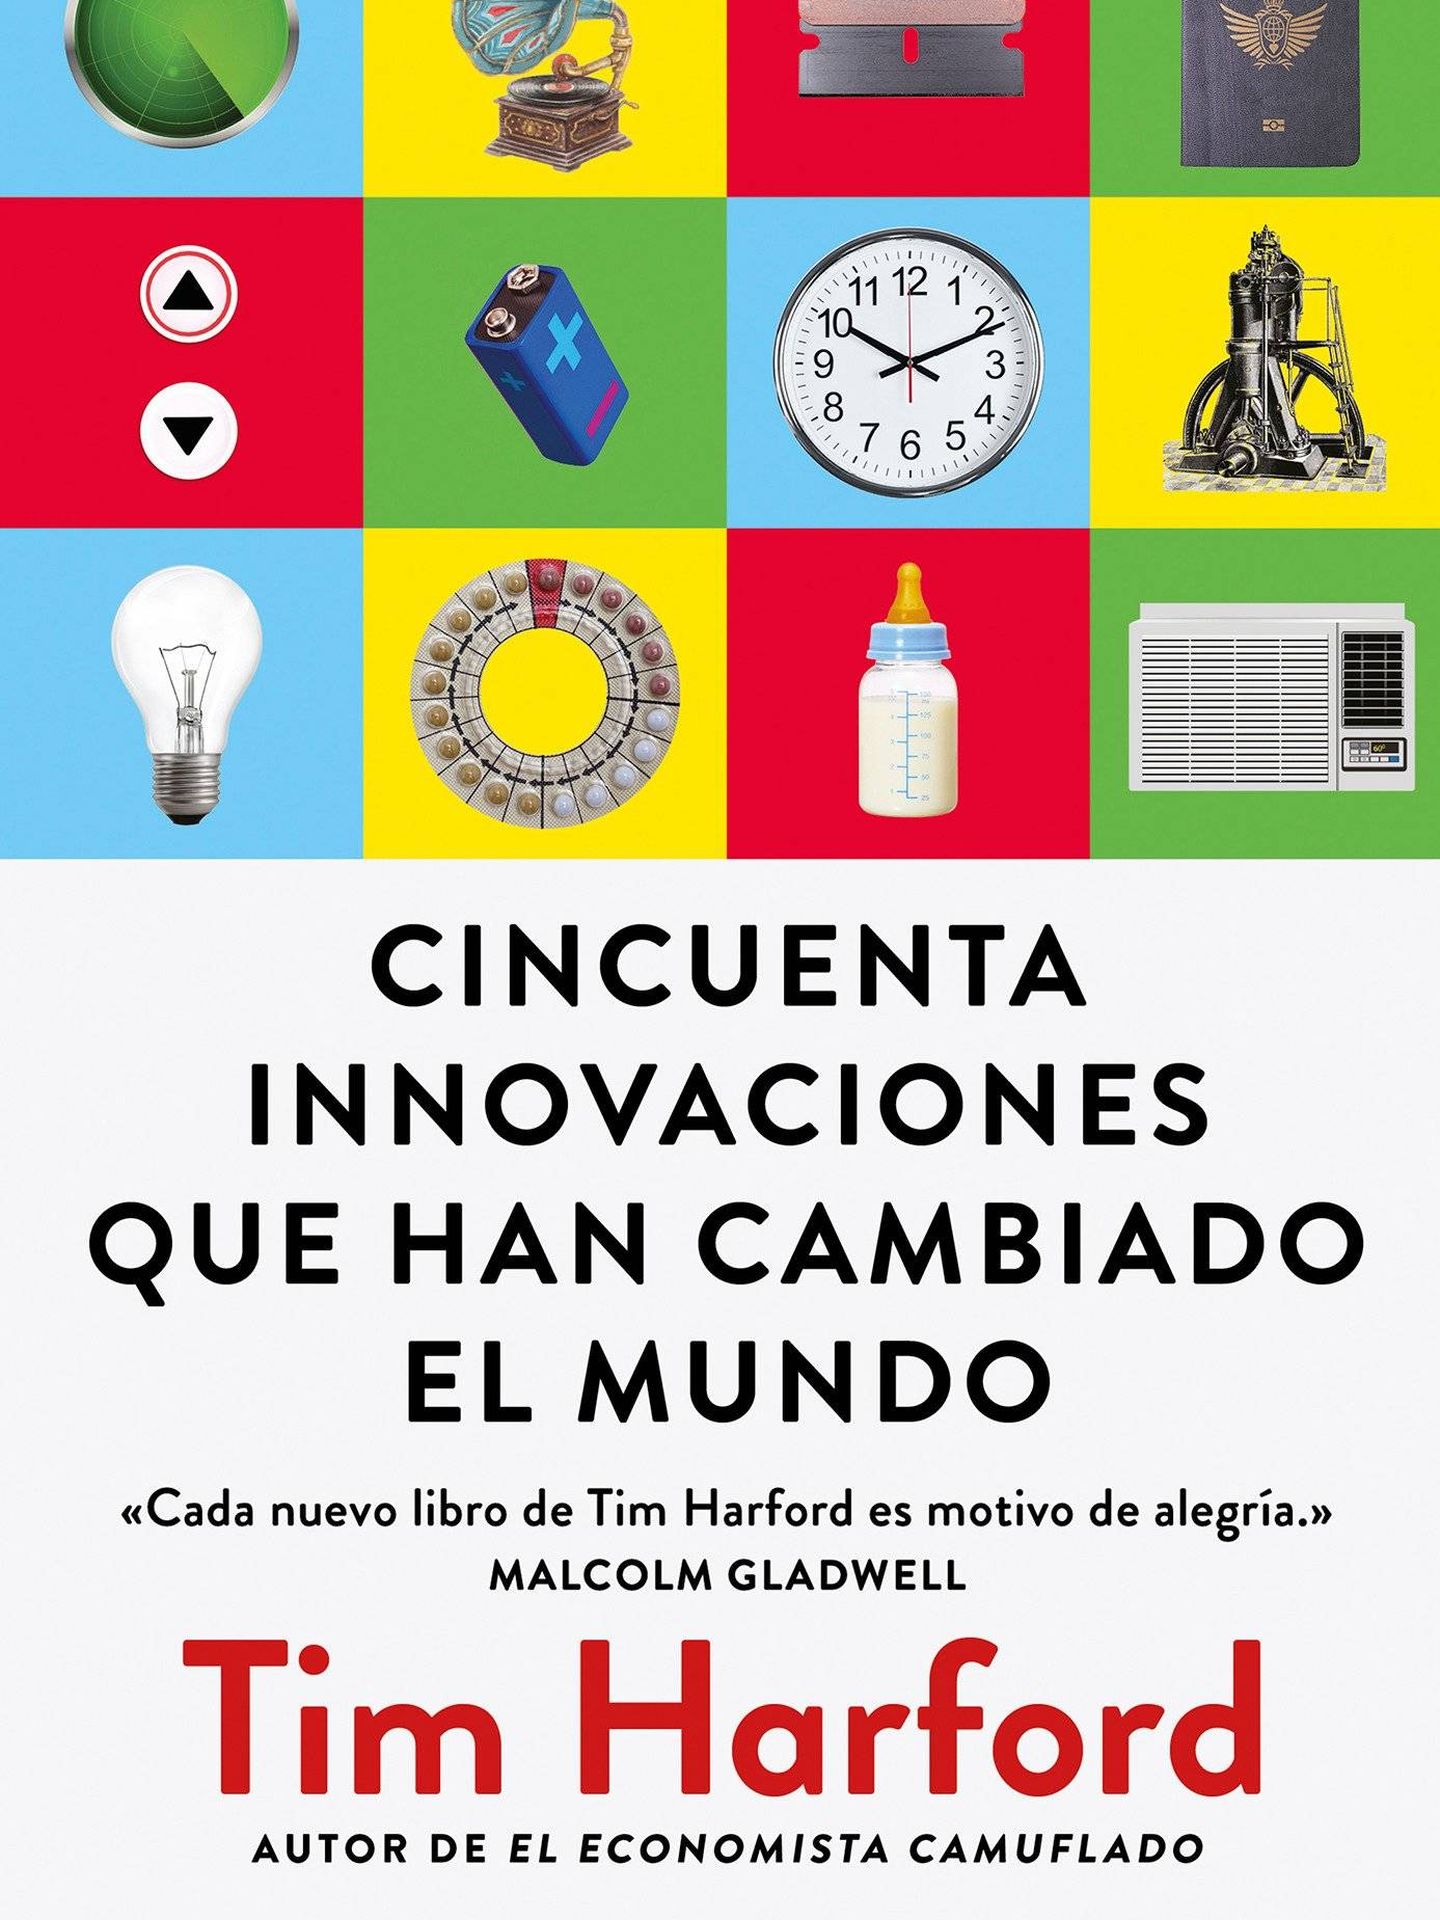 '50 innovaciones' (Alienta)